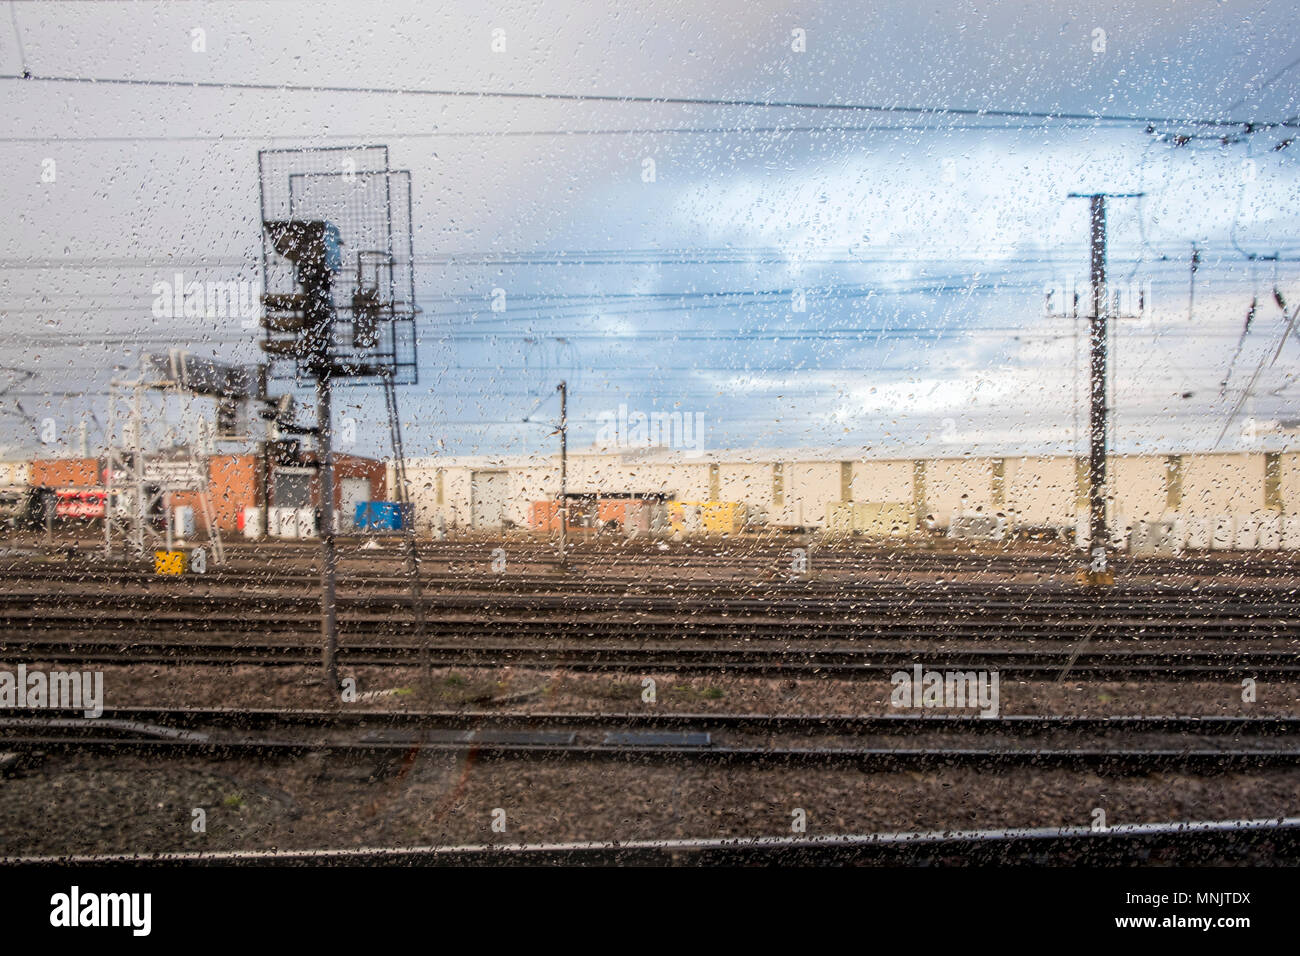 Par temps humide. À la recherche par le biais d'une fenêtre de train avec des gouttes de pluie sur la vitre au niveau des rails de chemin de fer un jour de pluie, Doncaster, England, UK Banque D'Images